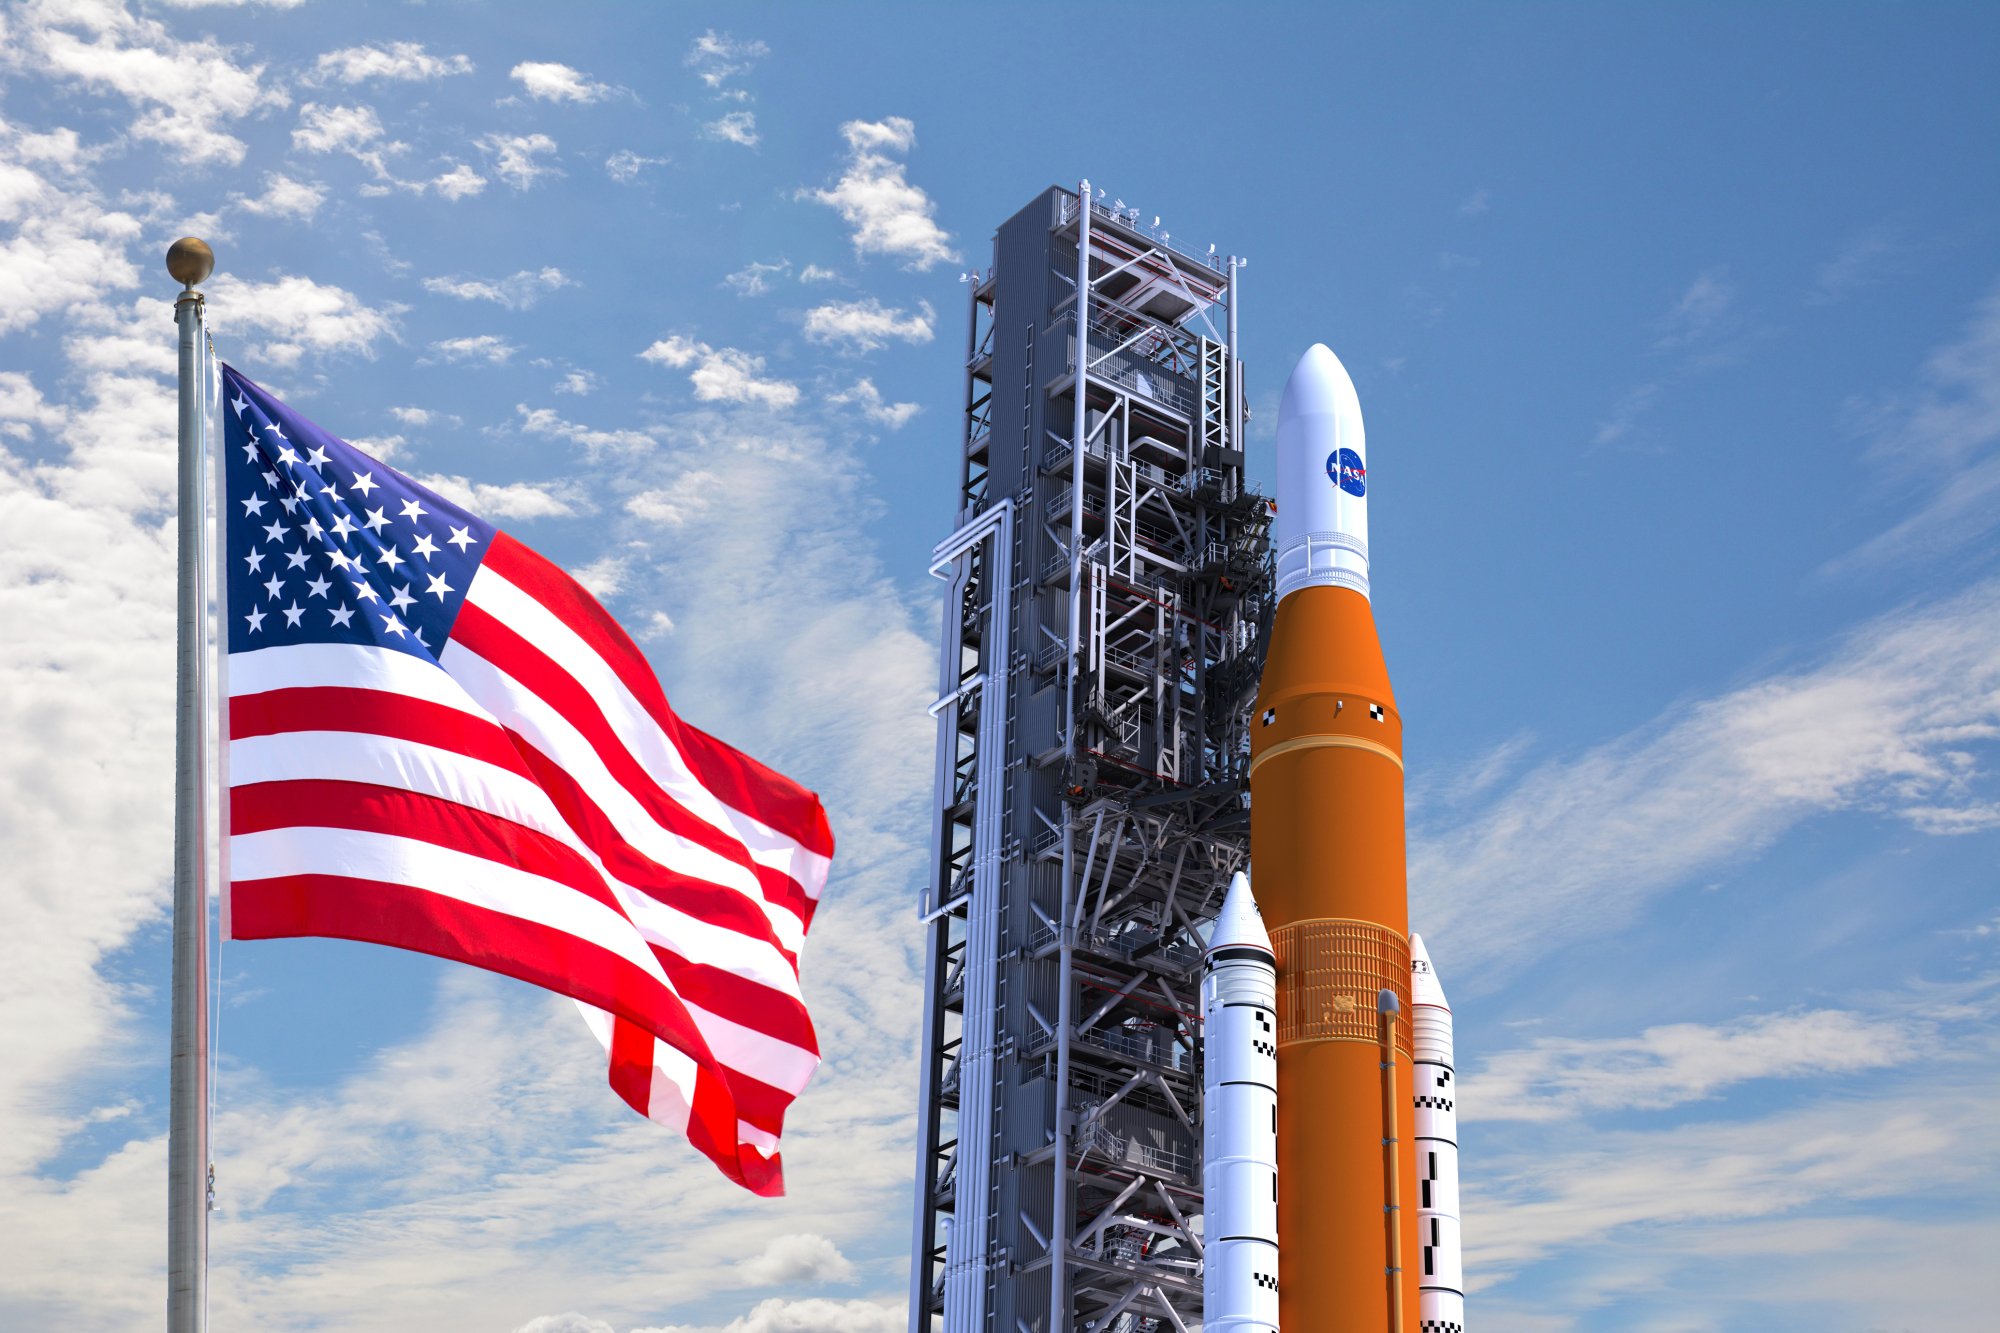 NASA's rocket soaring above the American flag